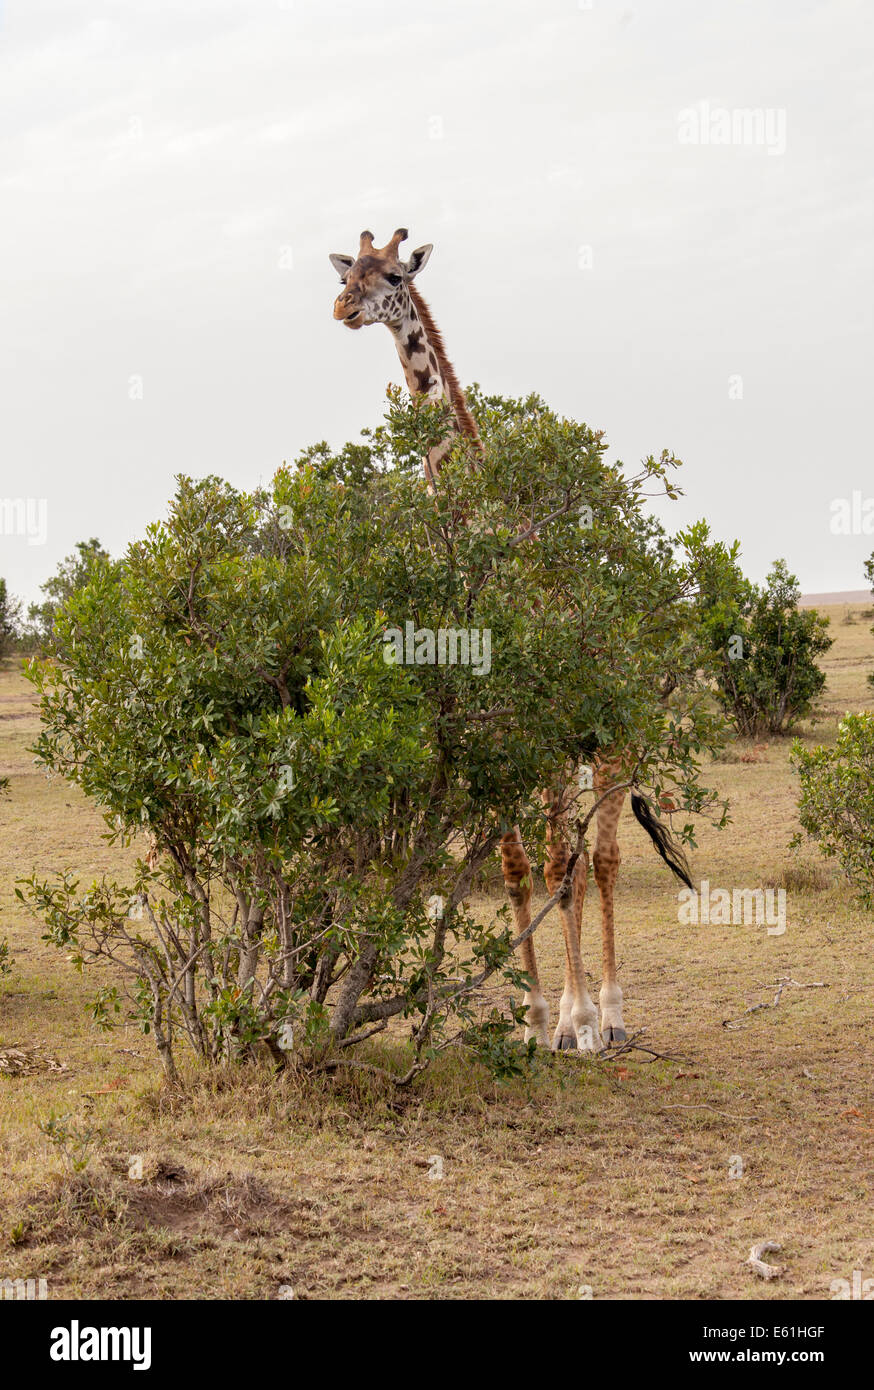 La giraffa nascondere nella boccola Foto Stock